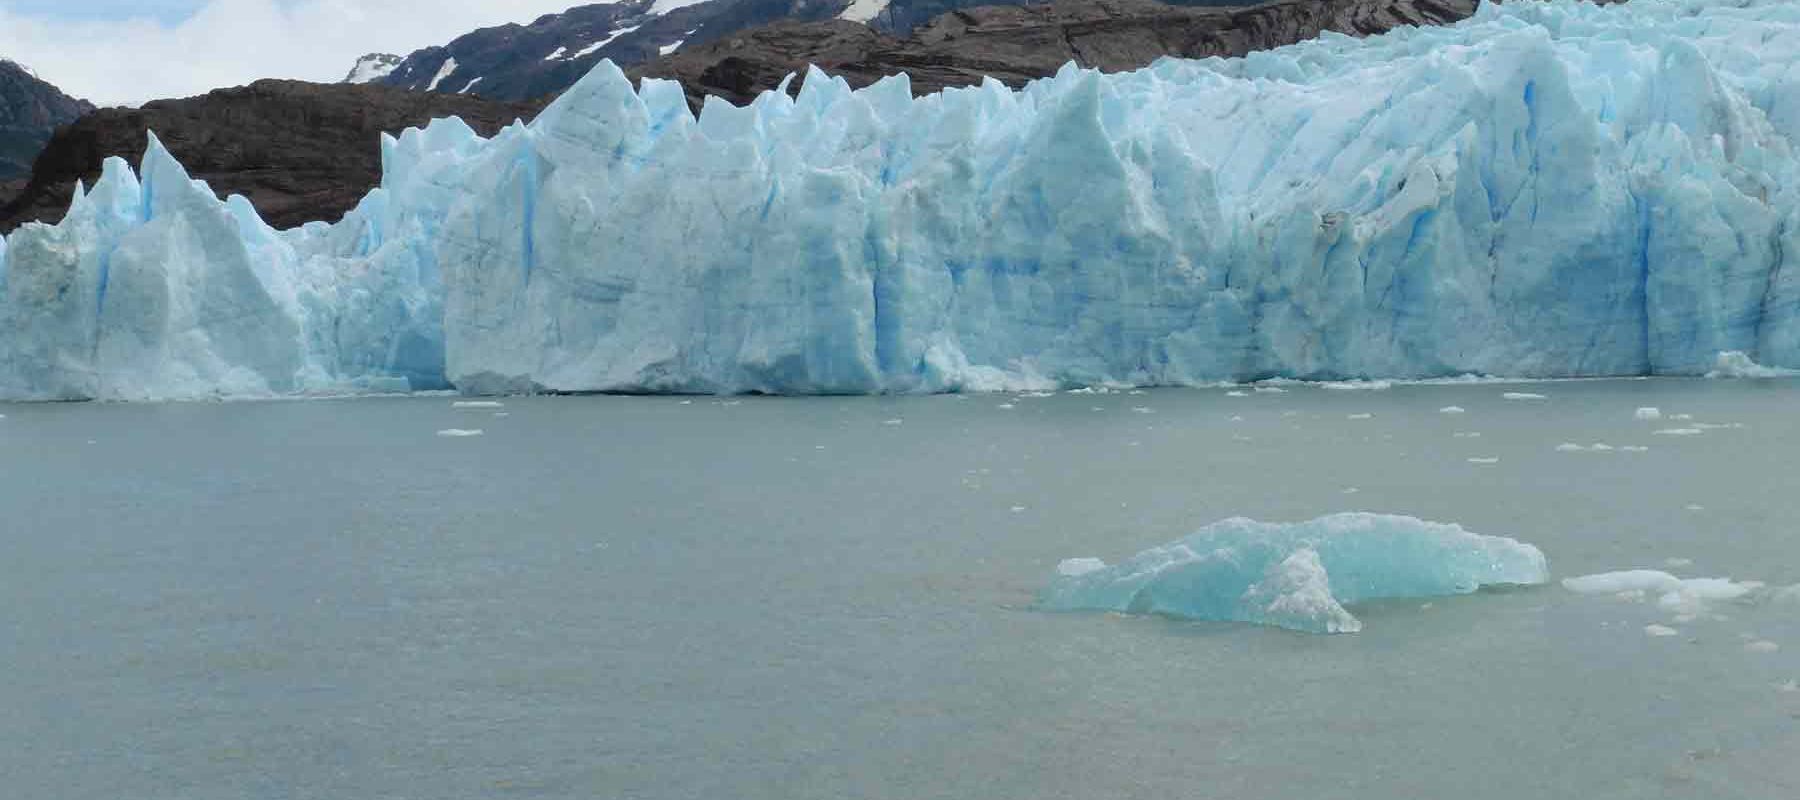 Grey Glacier at Torres del Paine Park Patagonia